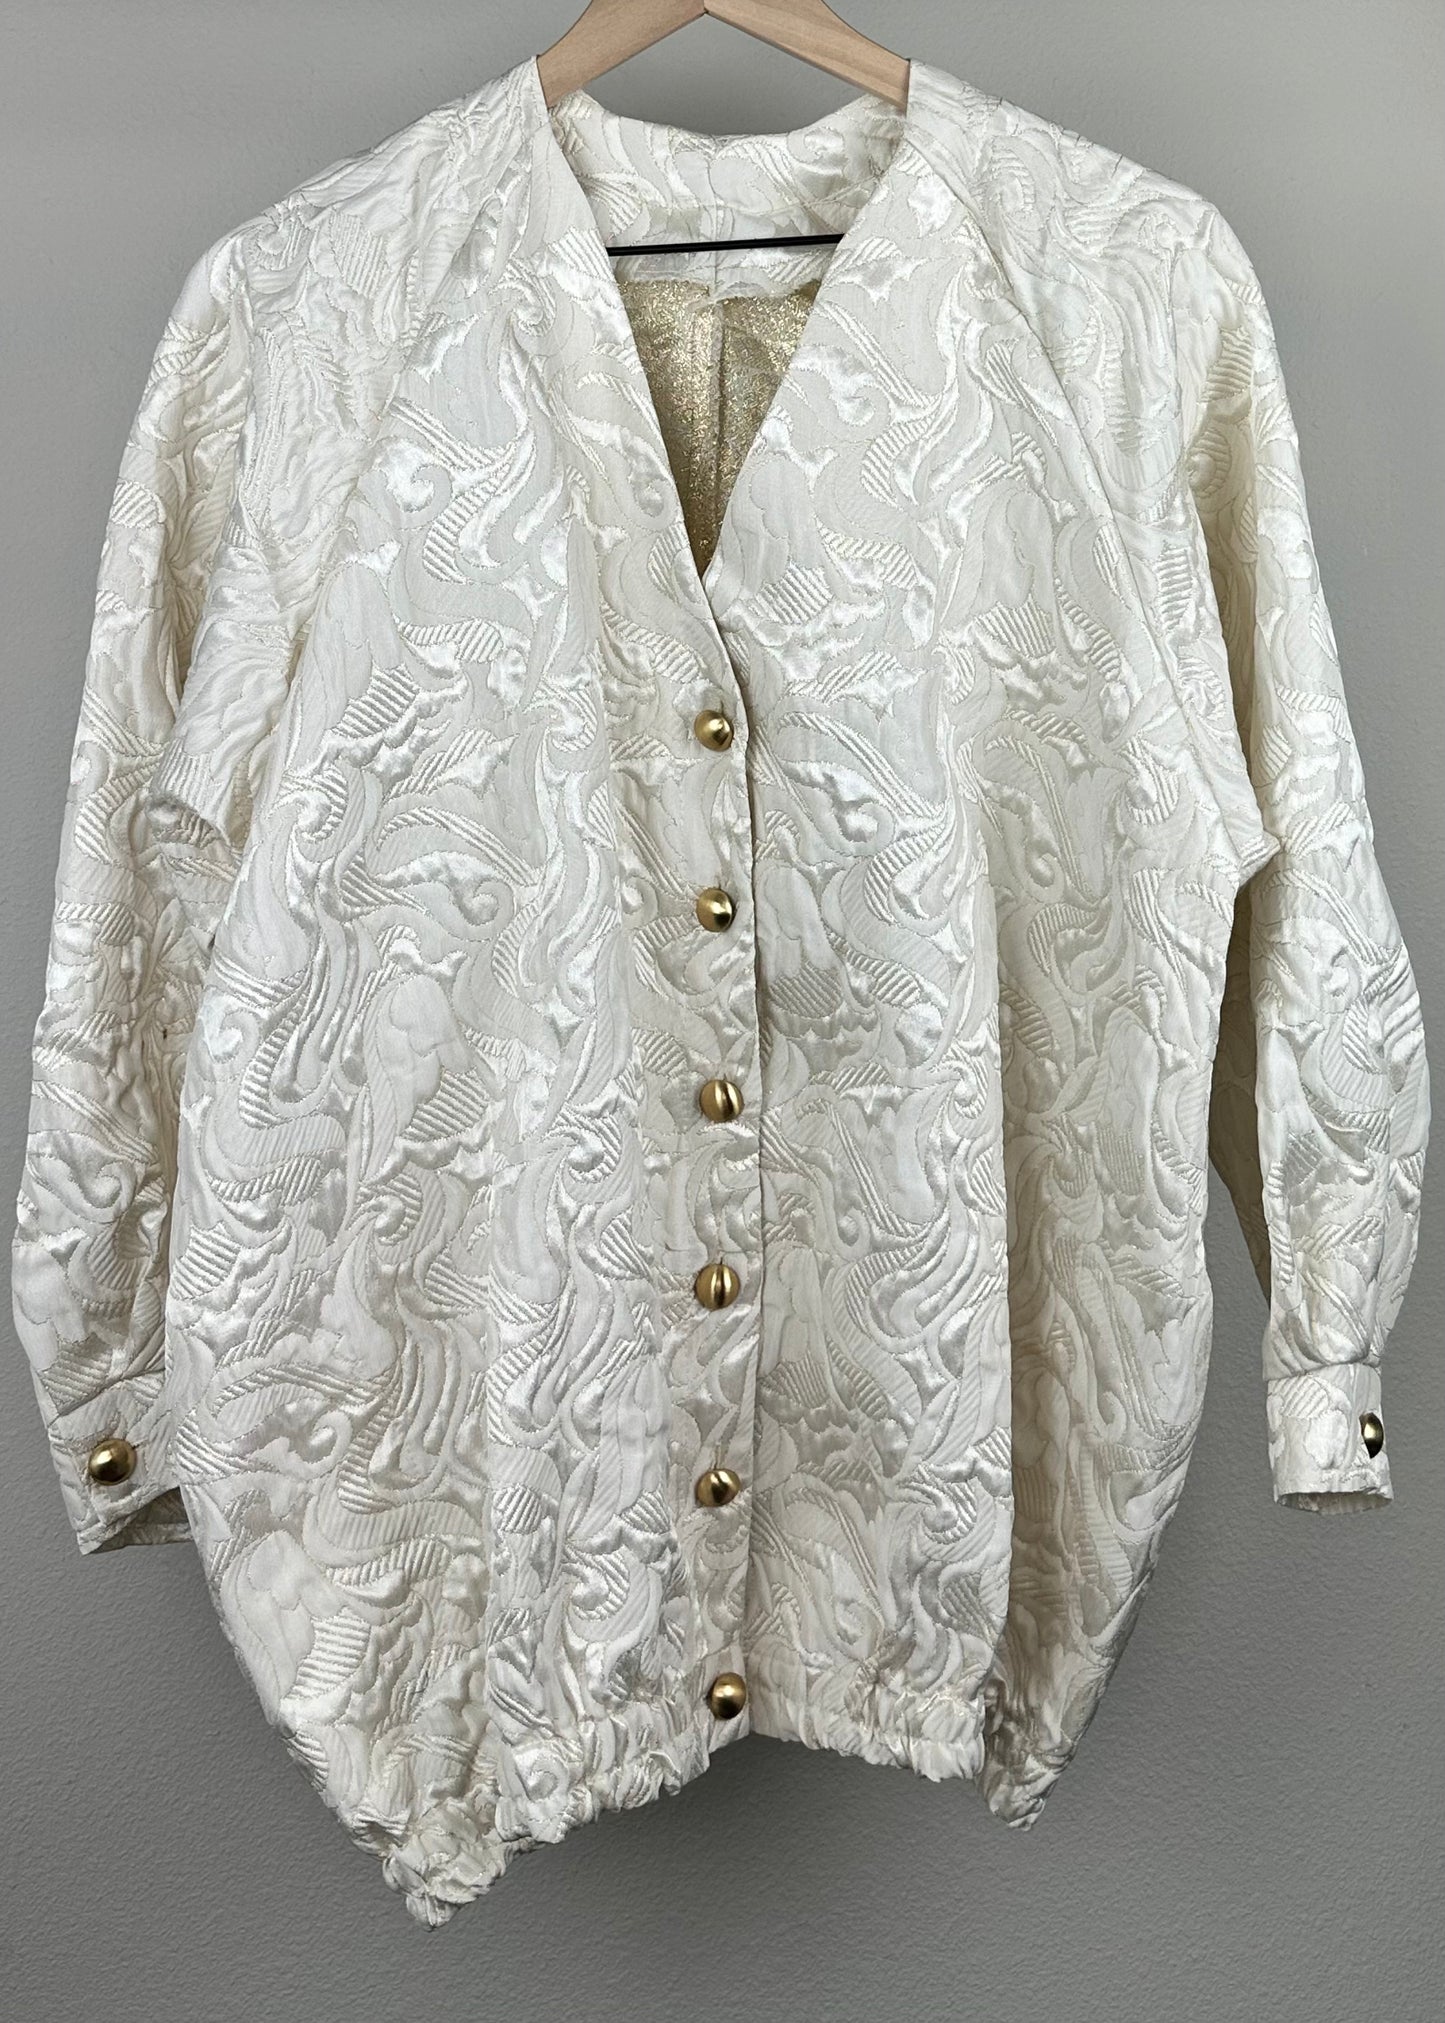 White on White Floral Jacket